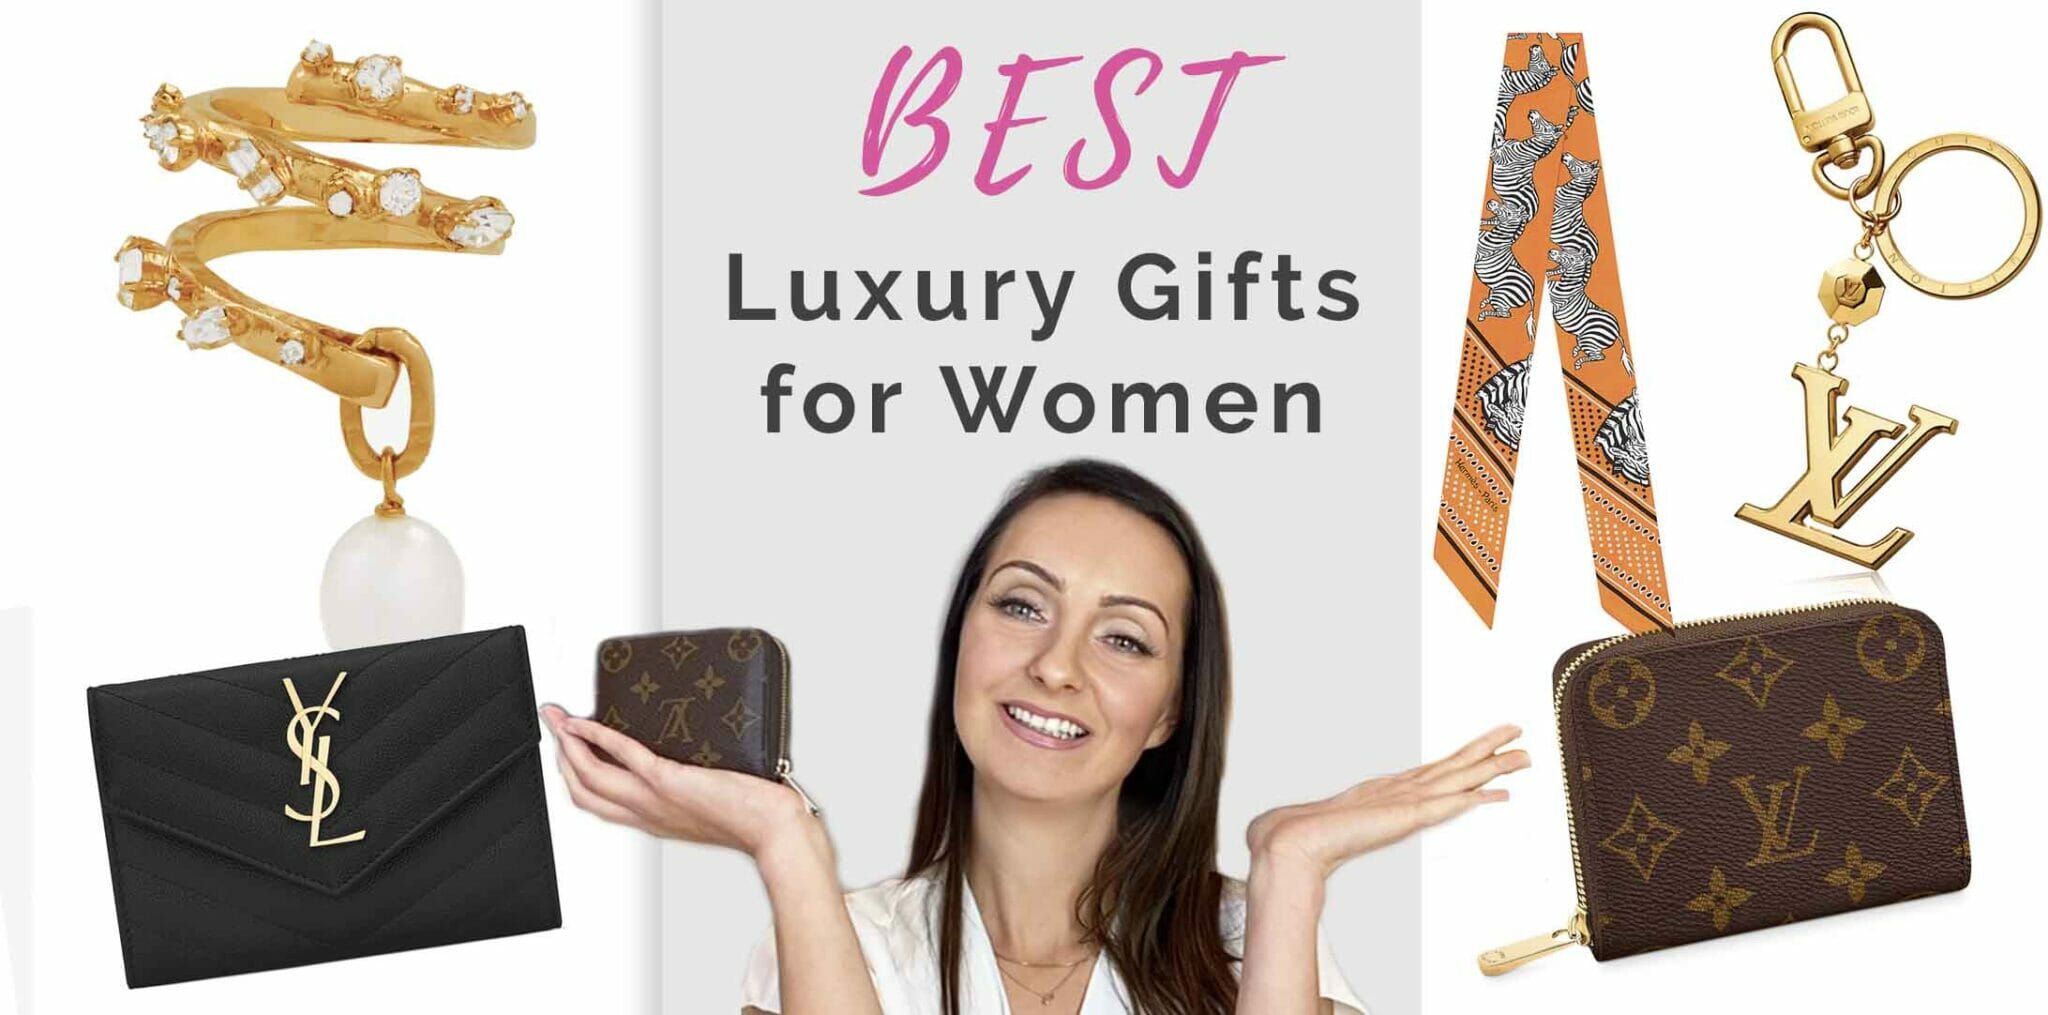 Best luxury gifts for women under $250 - The Peak Magazine